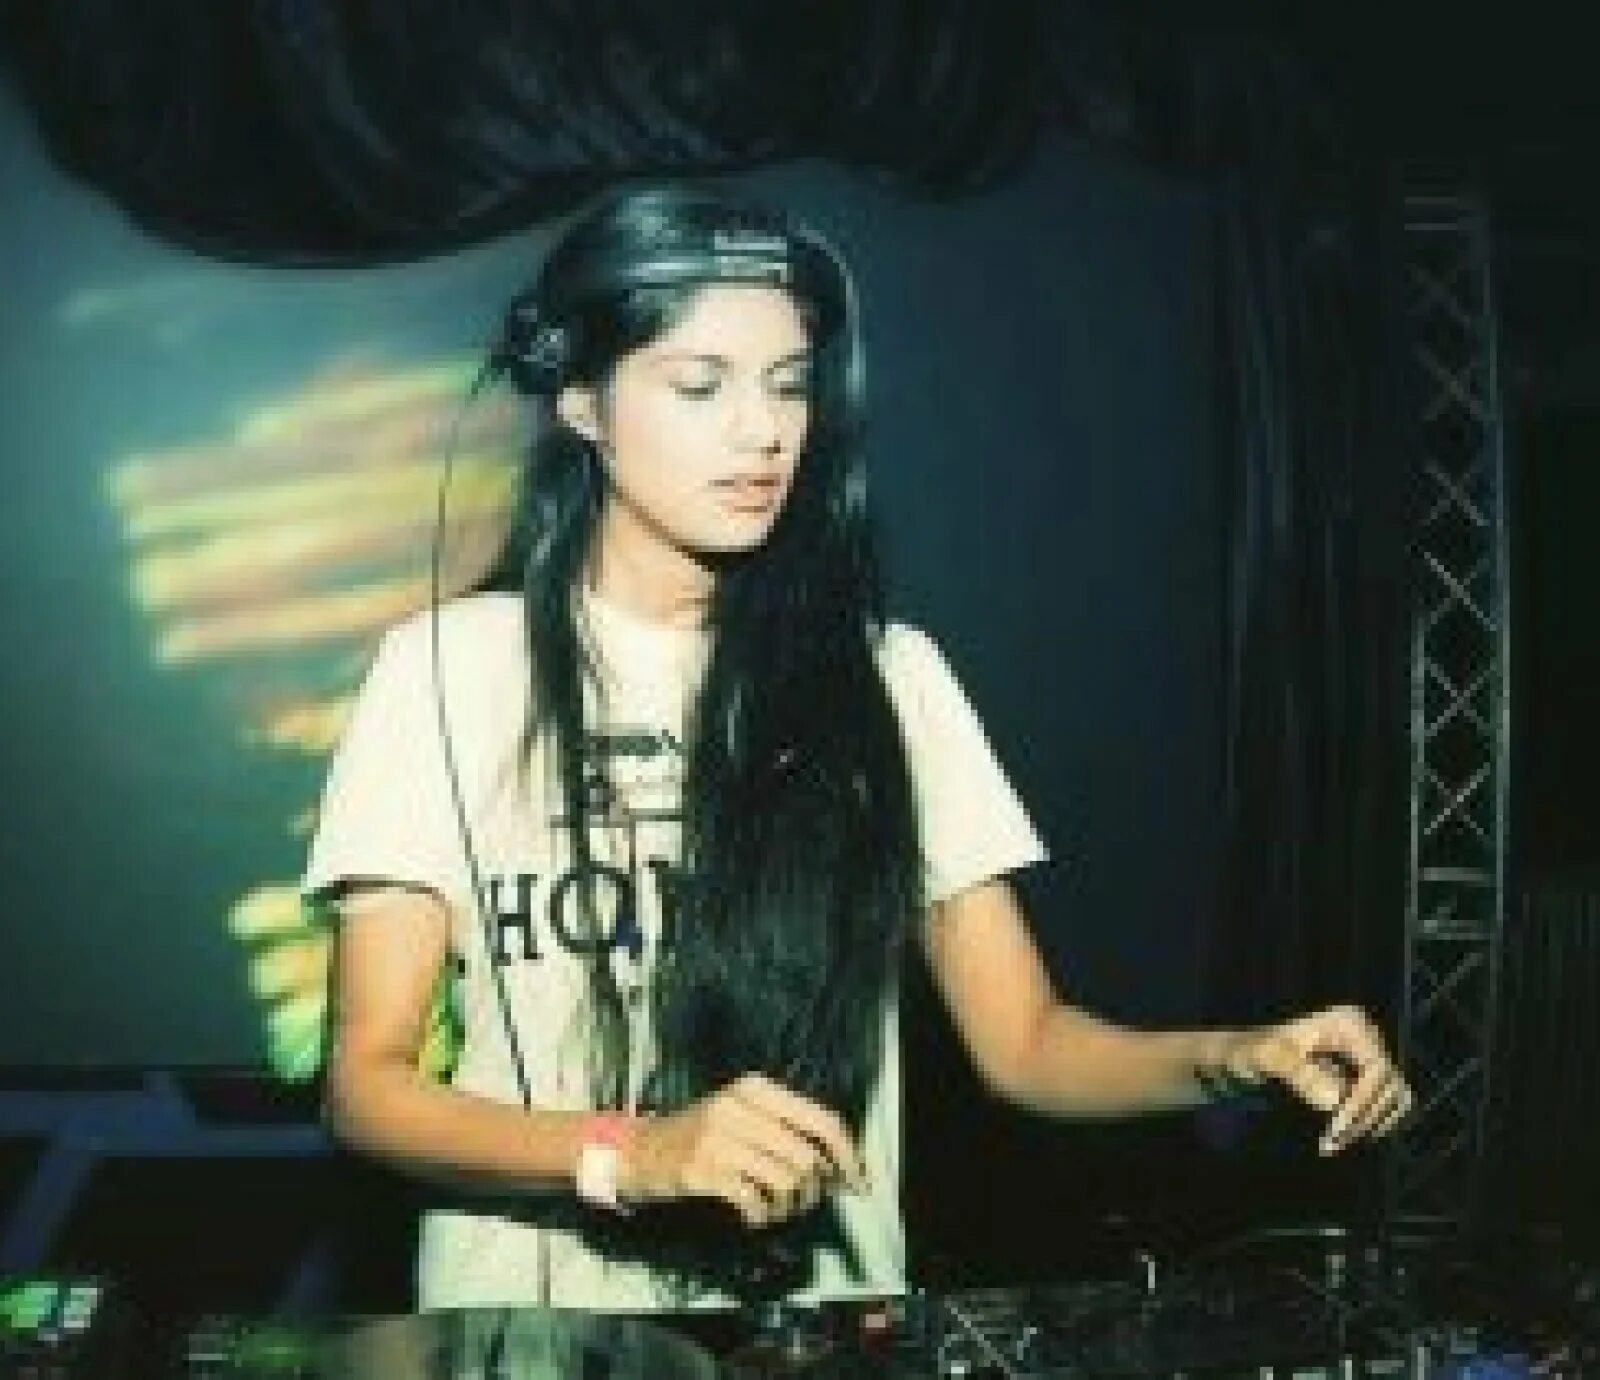 Королева DJ. DJ Queen Москва. Ванильный ниндзя диджей. Queen rami DJ девушка. Королева дж